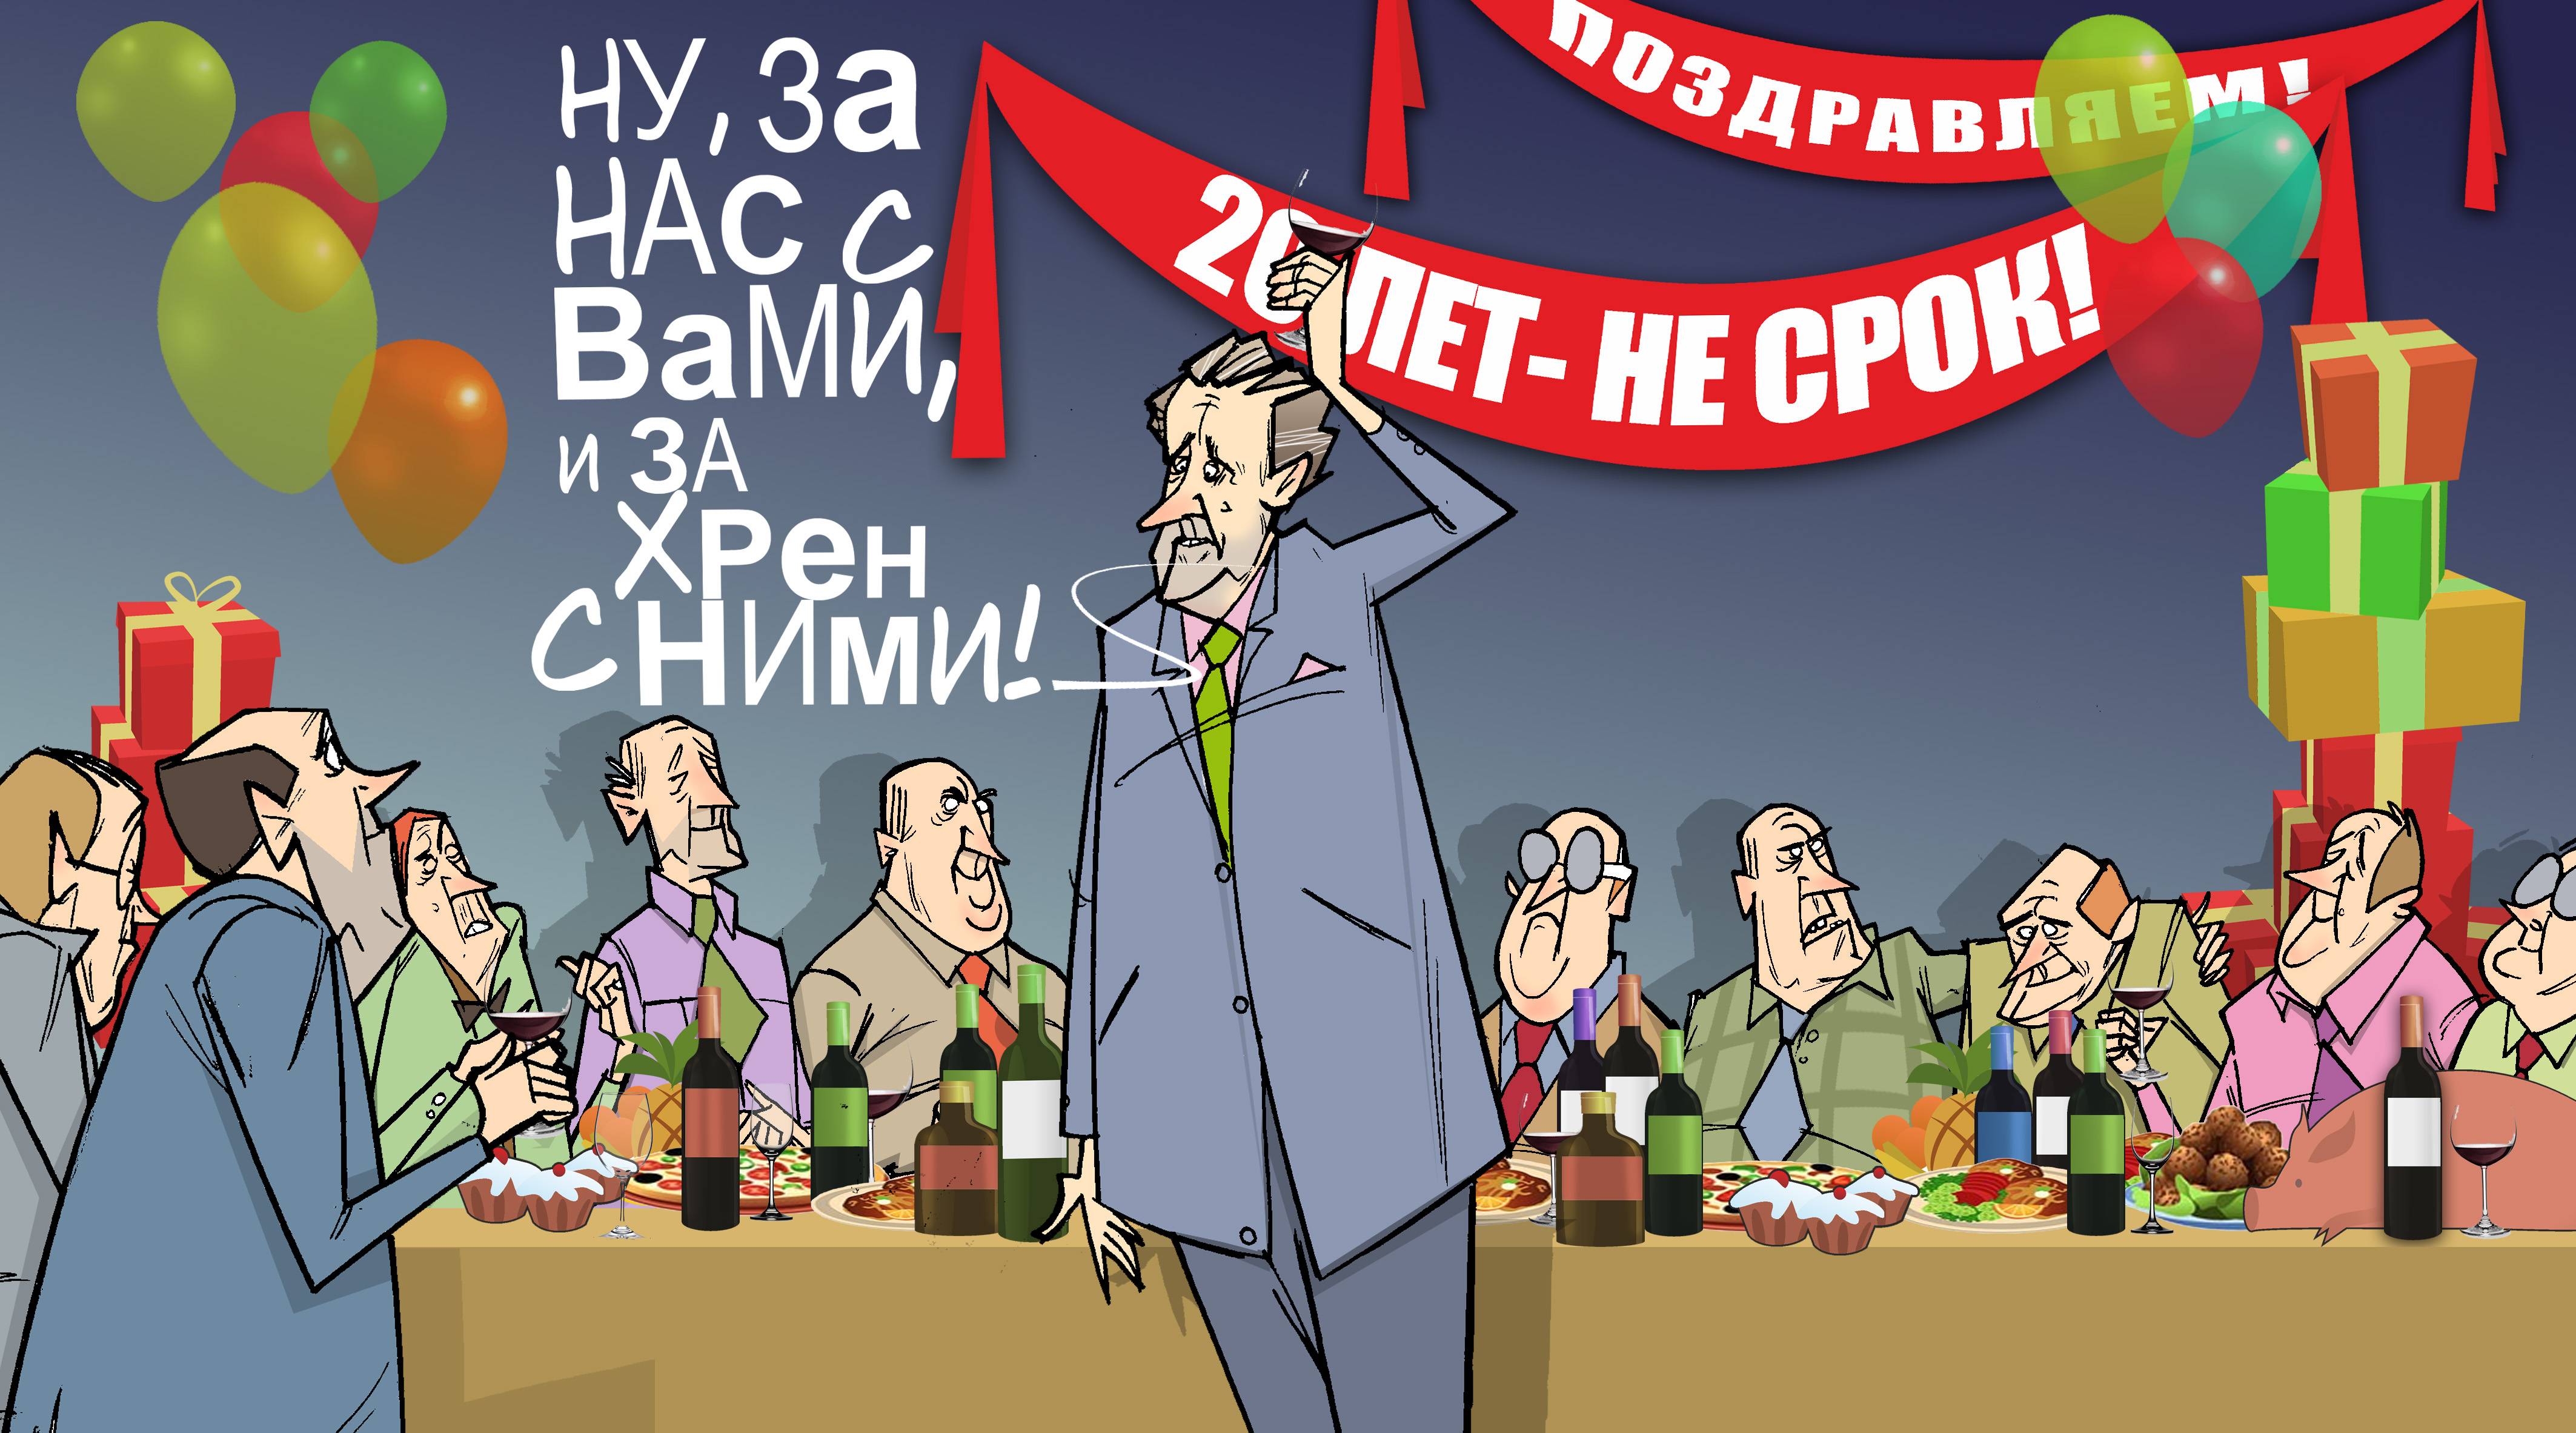 За нас с вами и за хрен с ними! #ПрезидентУР #Волков © Газета "День" 2013